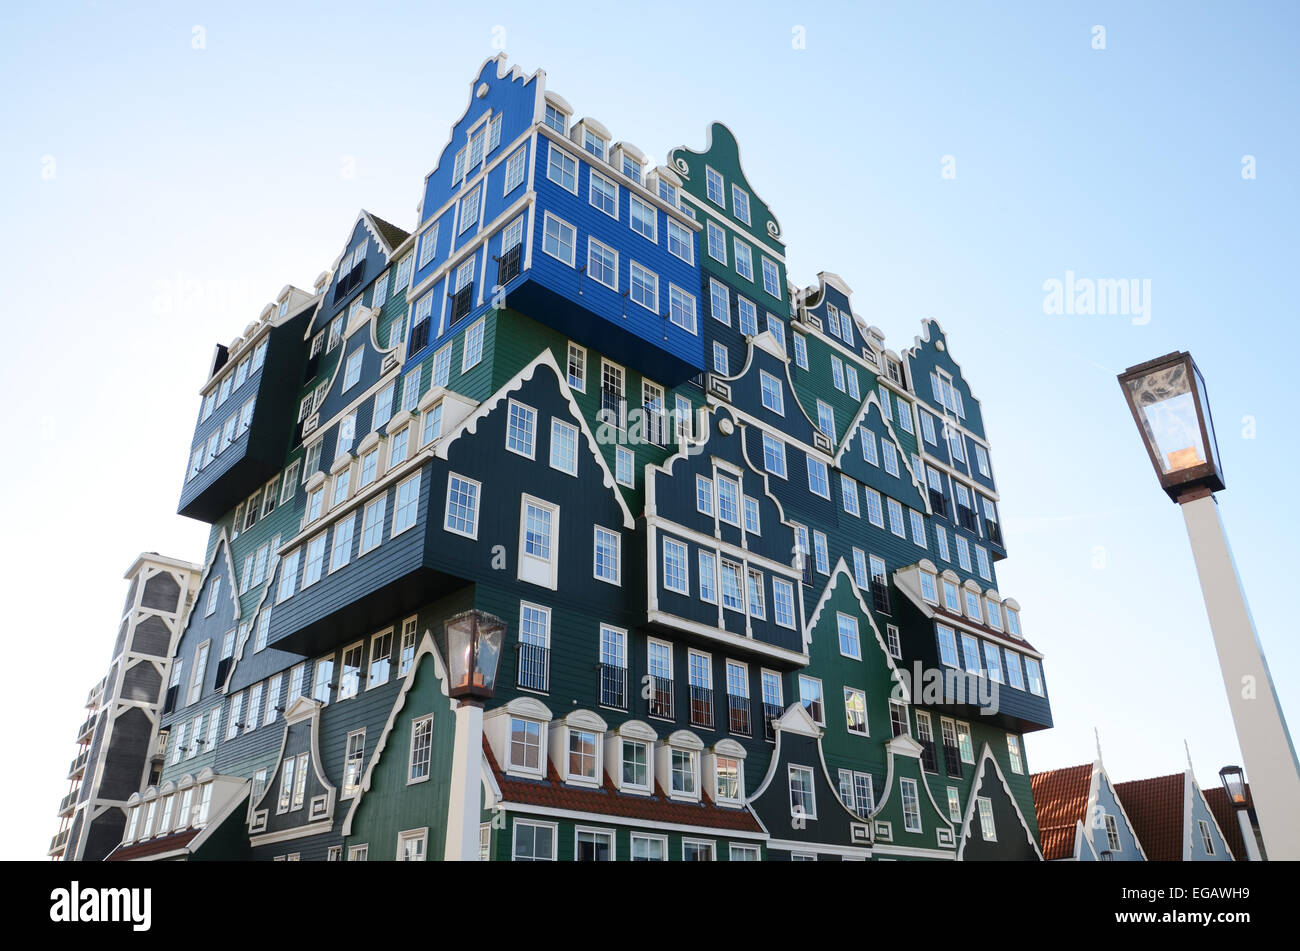 Architettura stravagante di Inntel Hotel a Zaandam, Paesi Bassi Foto Stock